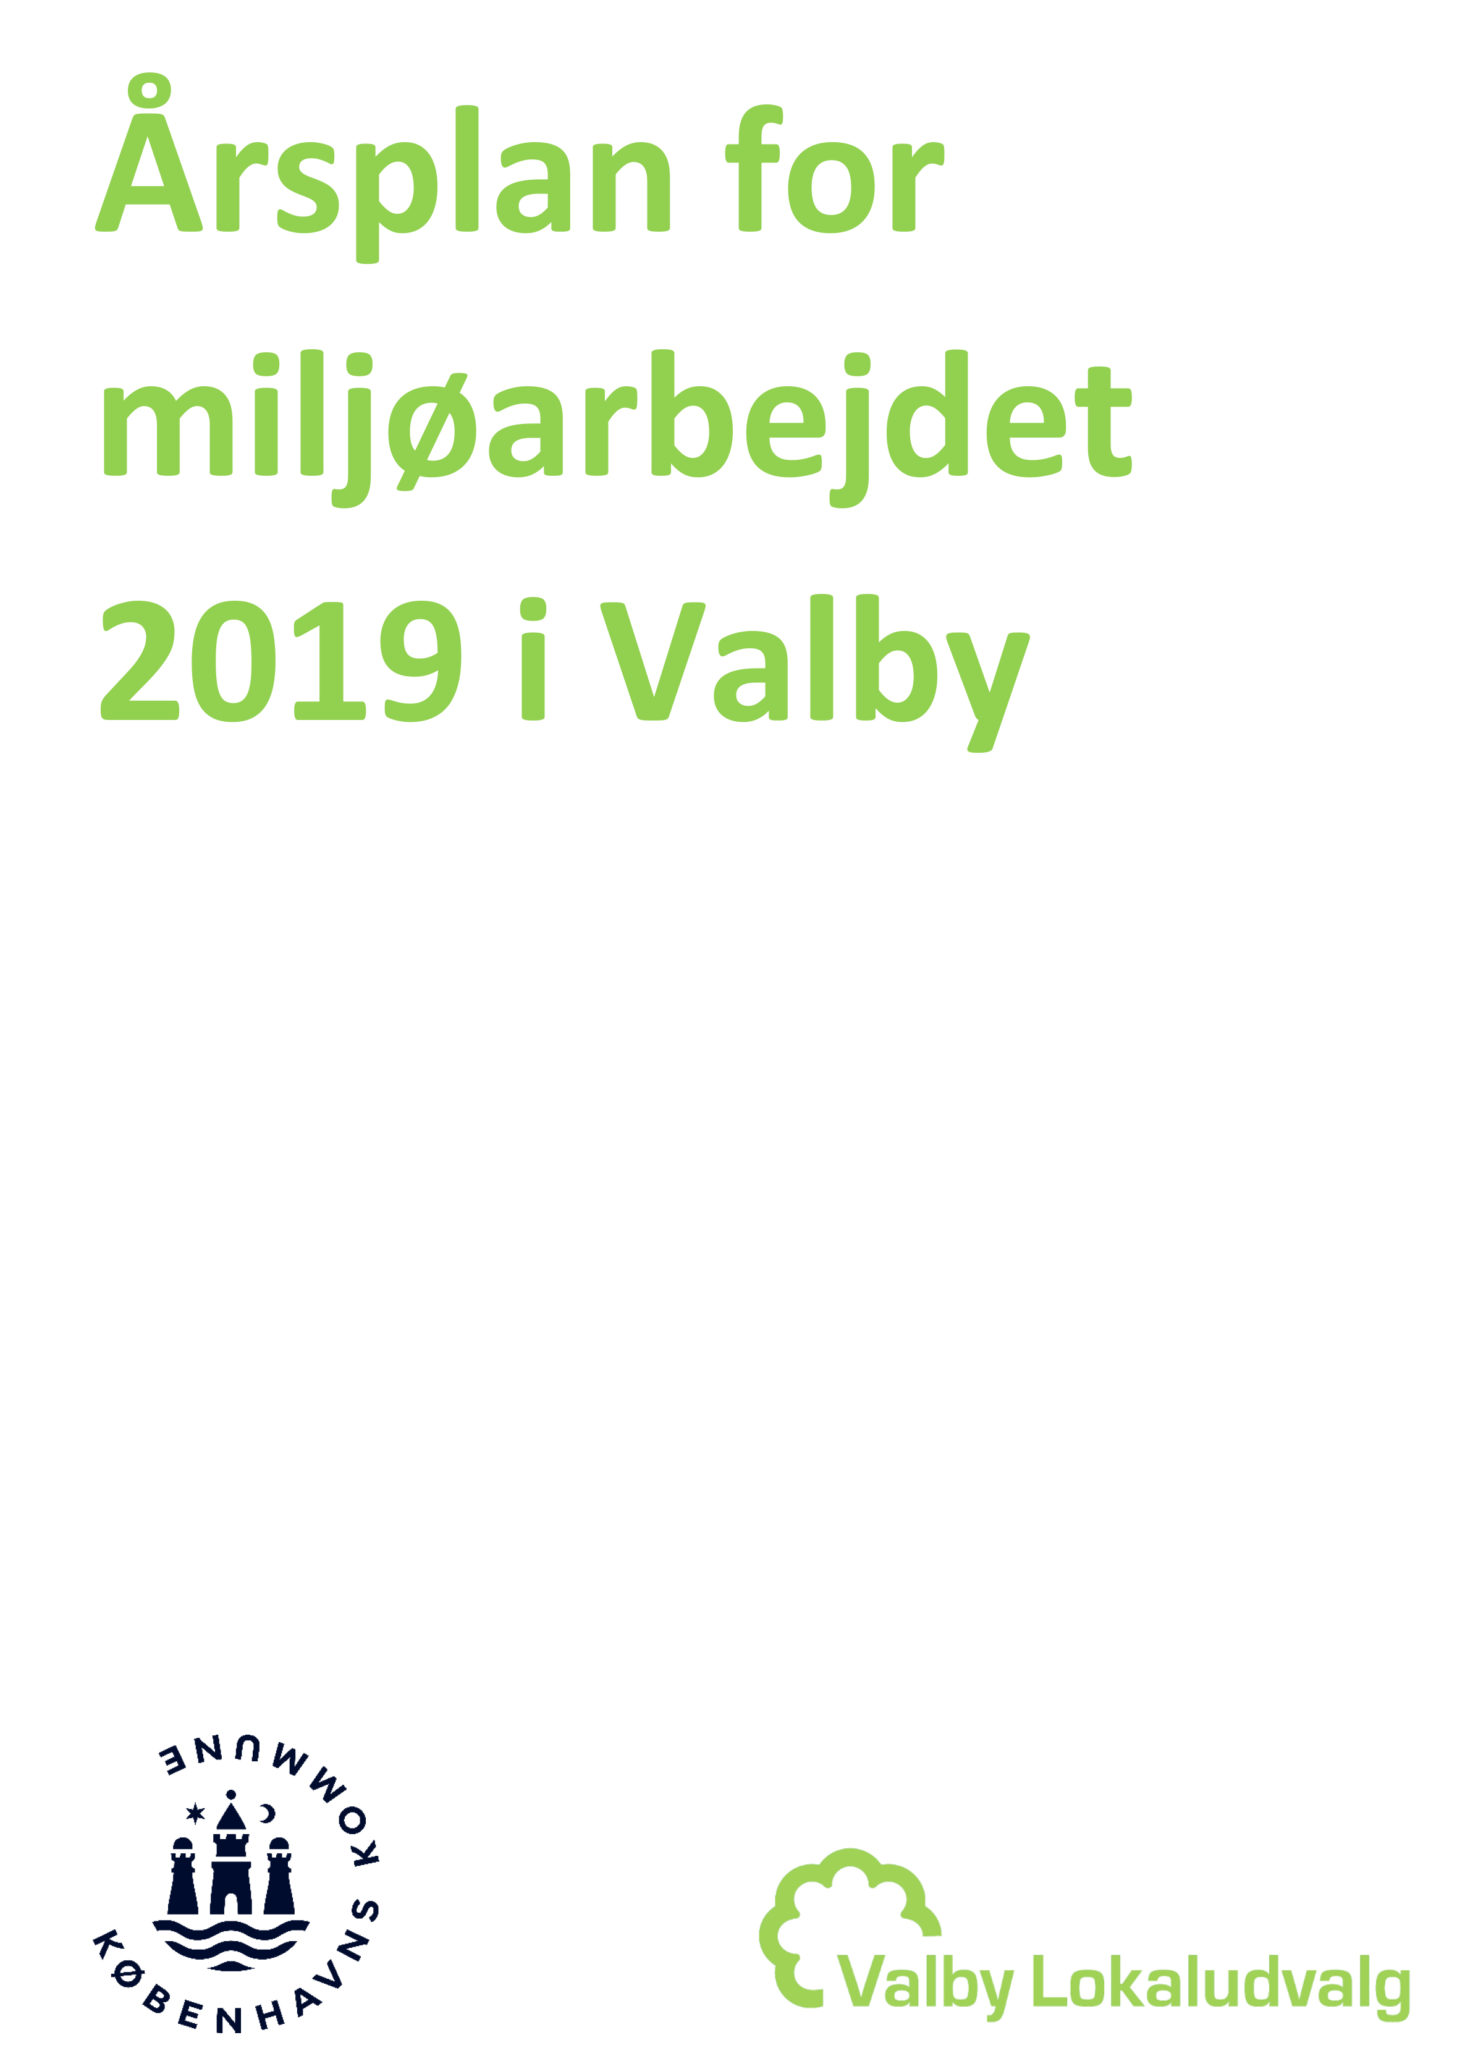 Årsplan for Miljøarbejdet i Valby 2019 forside